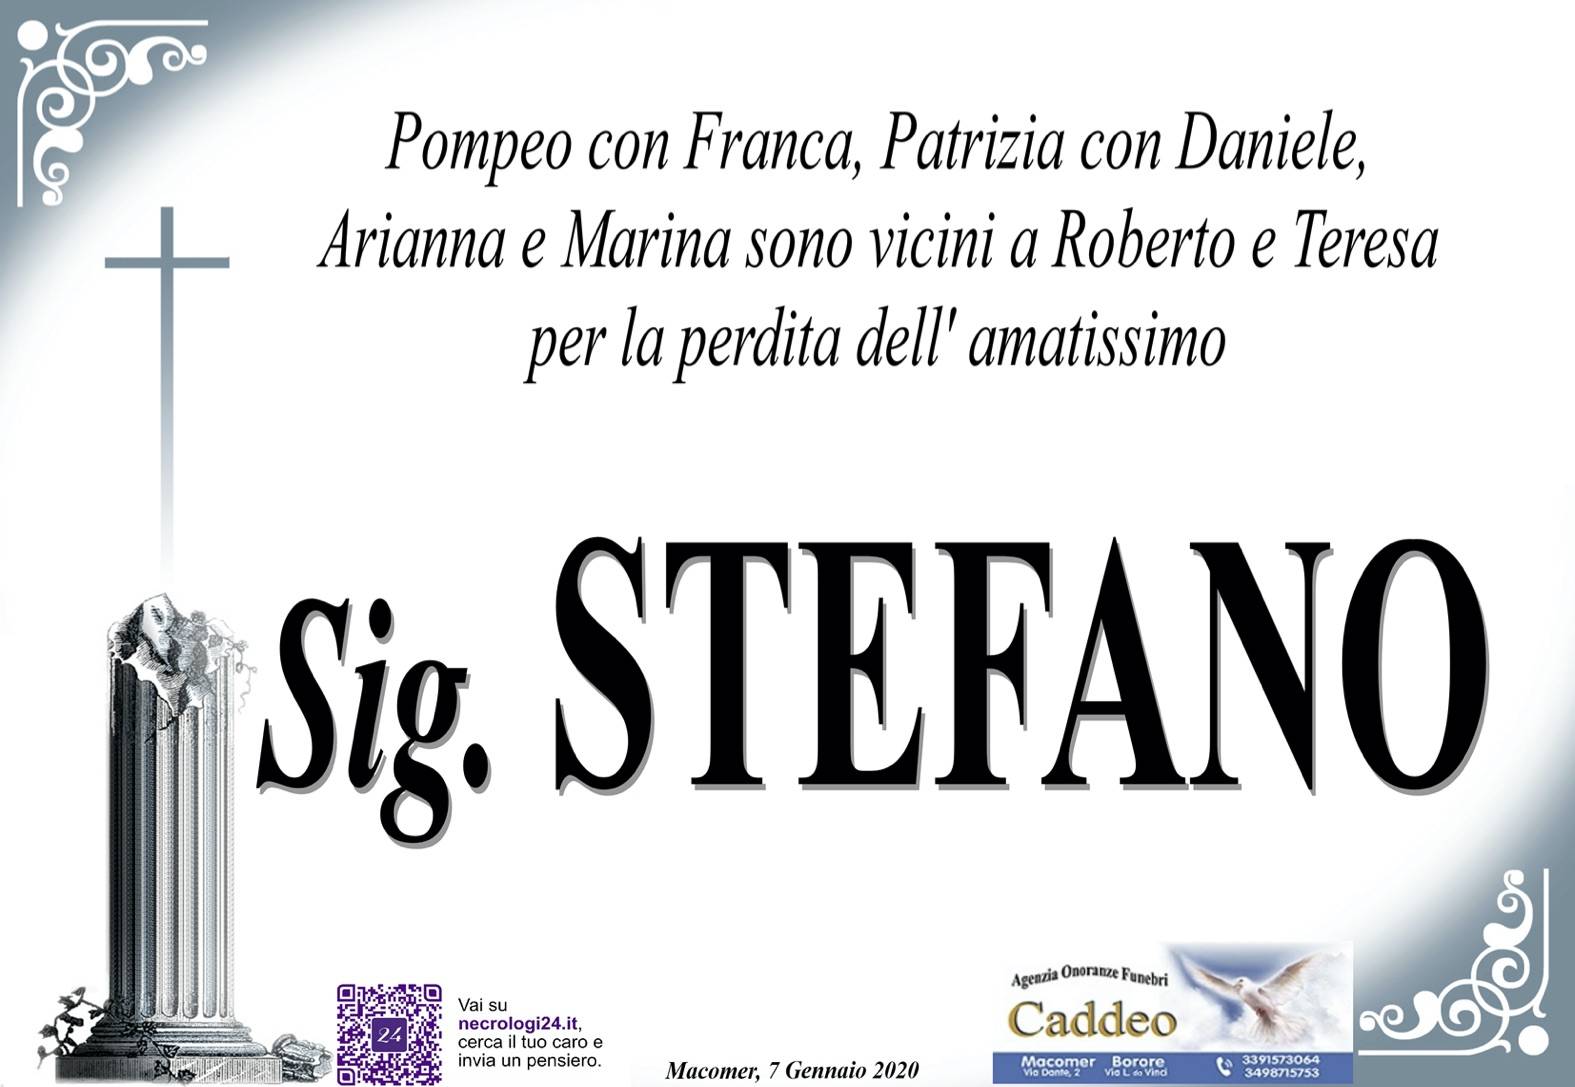 Partecipazione Pompeo con Franca/Patrizia con Daniele/Arianna e Marina - def. Stefano Tatti